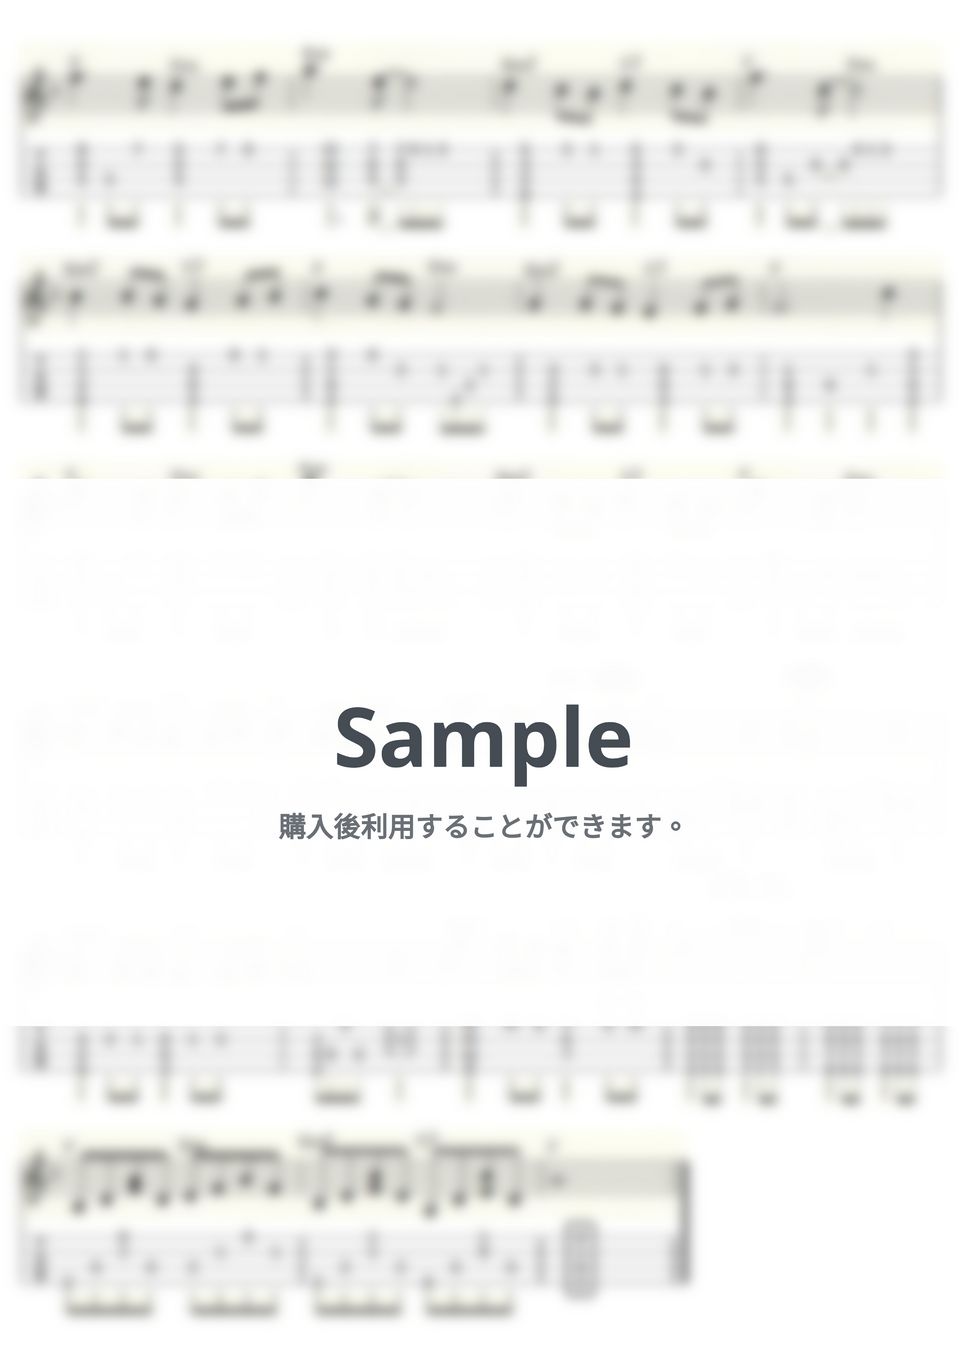 グラシェラ・スサーナ - 時計 ～EL RELOJ～ (ｳｸﾚﾚｿﾛ/Low-G/中級) by ukulelepapa